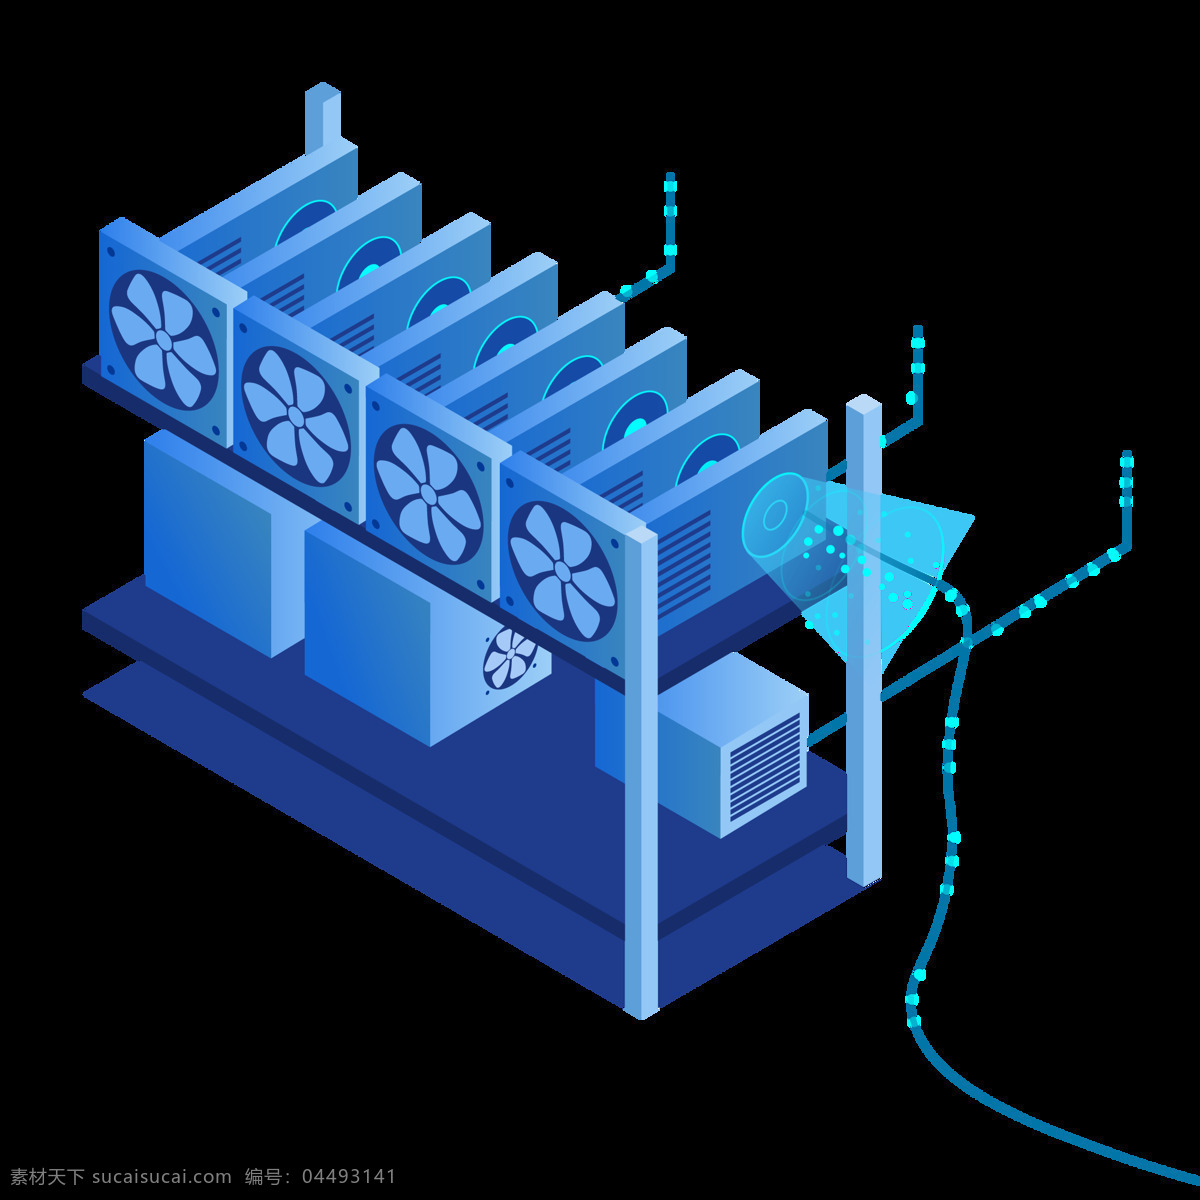 变压器 蓝色 变电站 立体图 3d变电站 海报矢量 画册设计